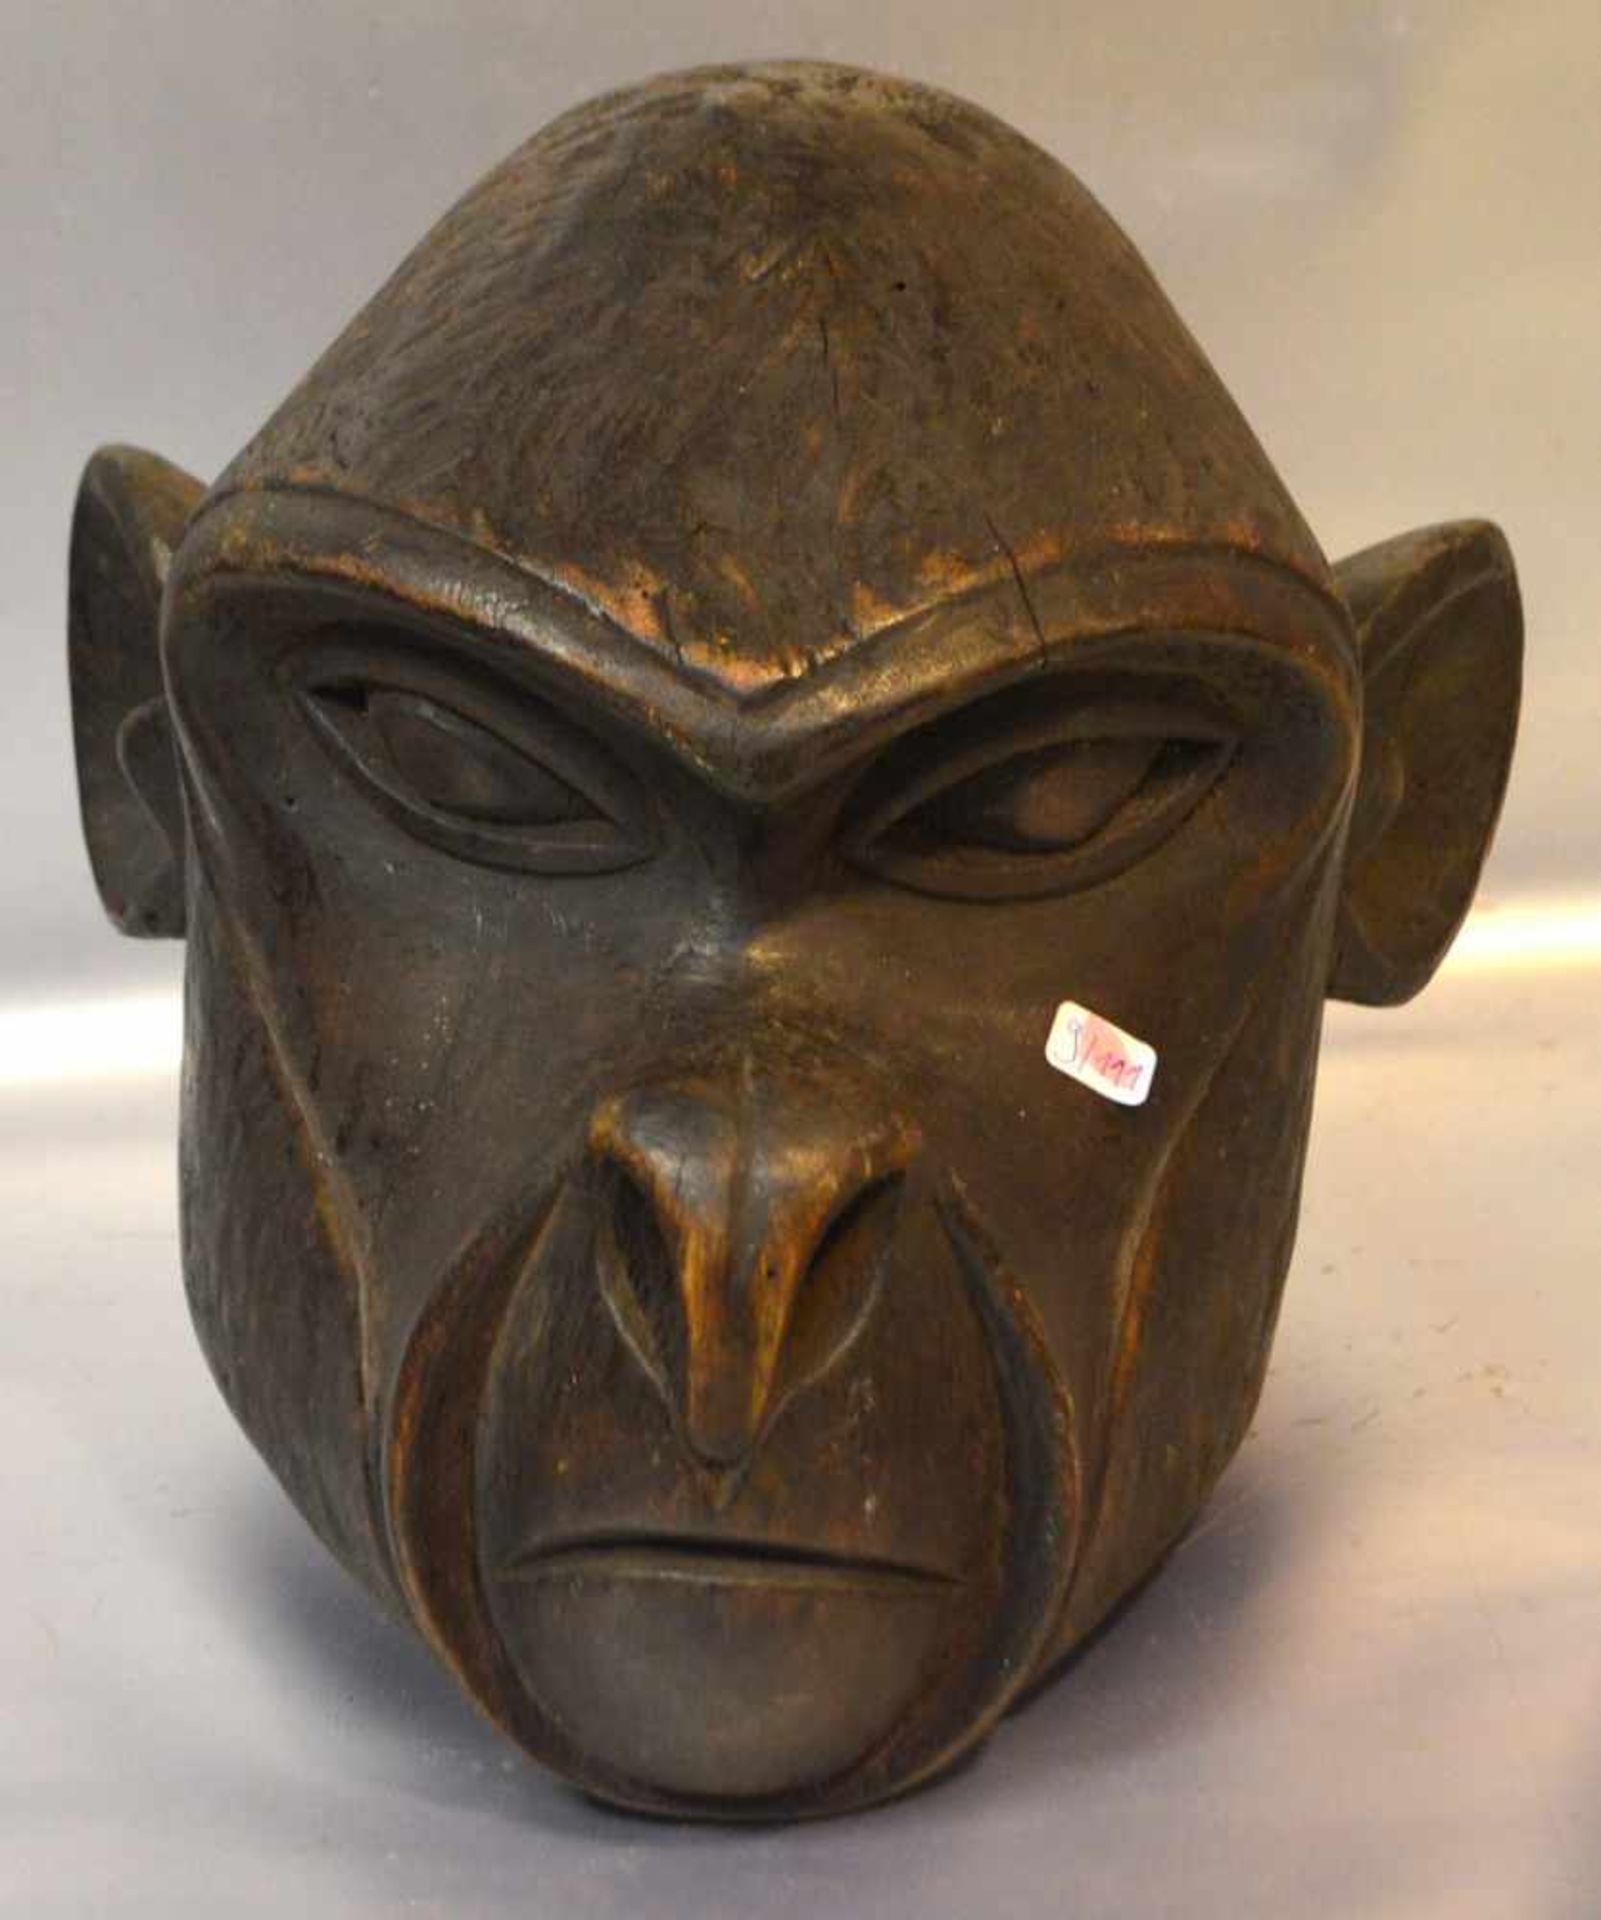 Kopf eines GorillasHartholz, geschnitzt, H 22 cm, L 24 cm